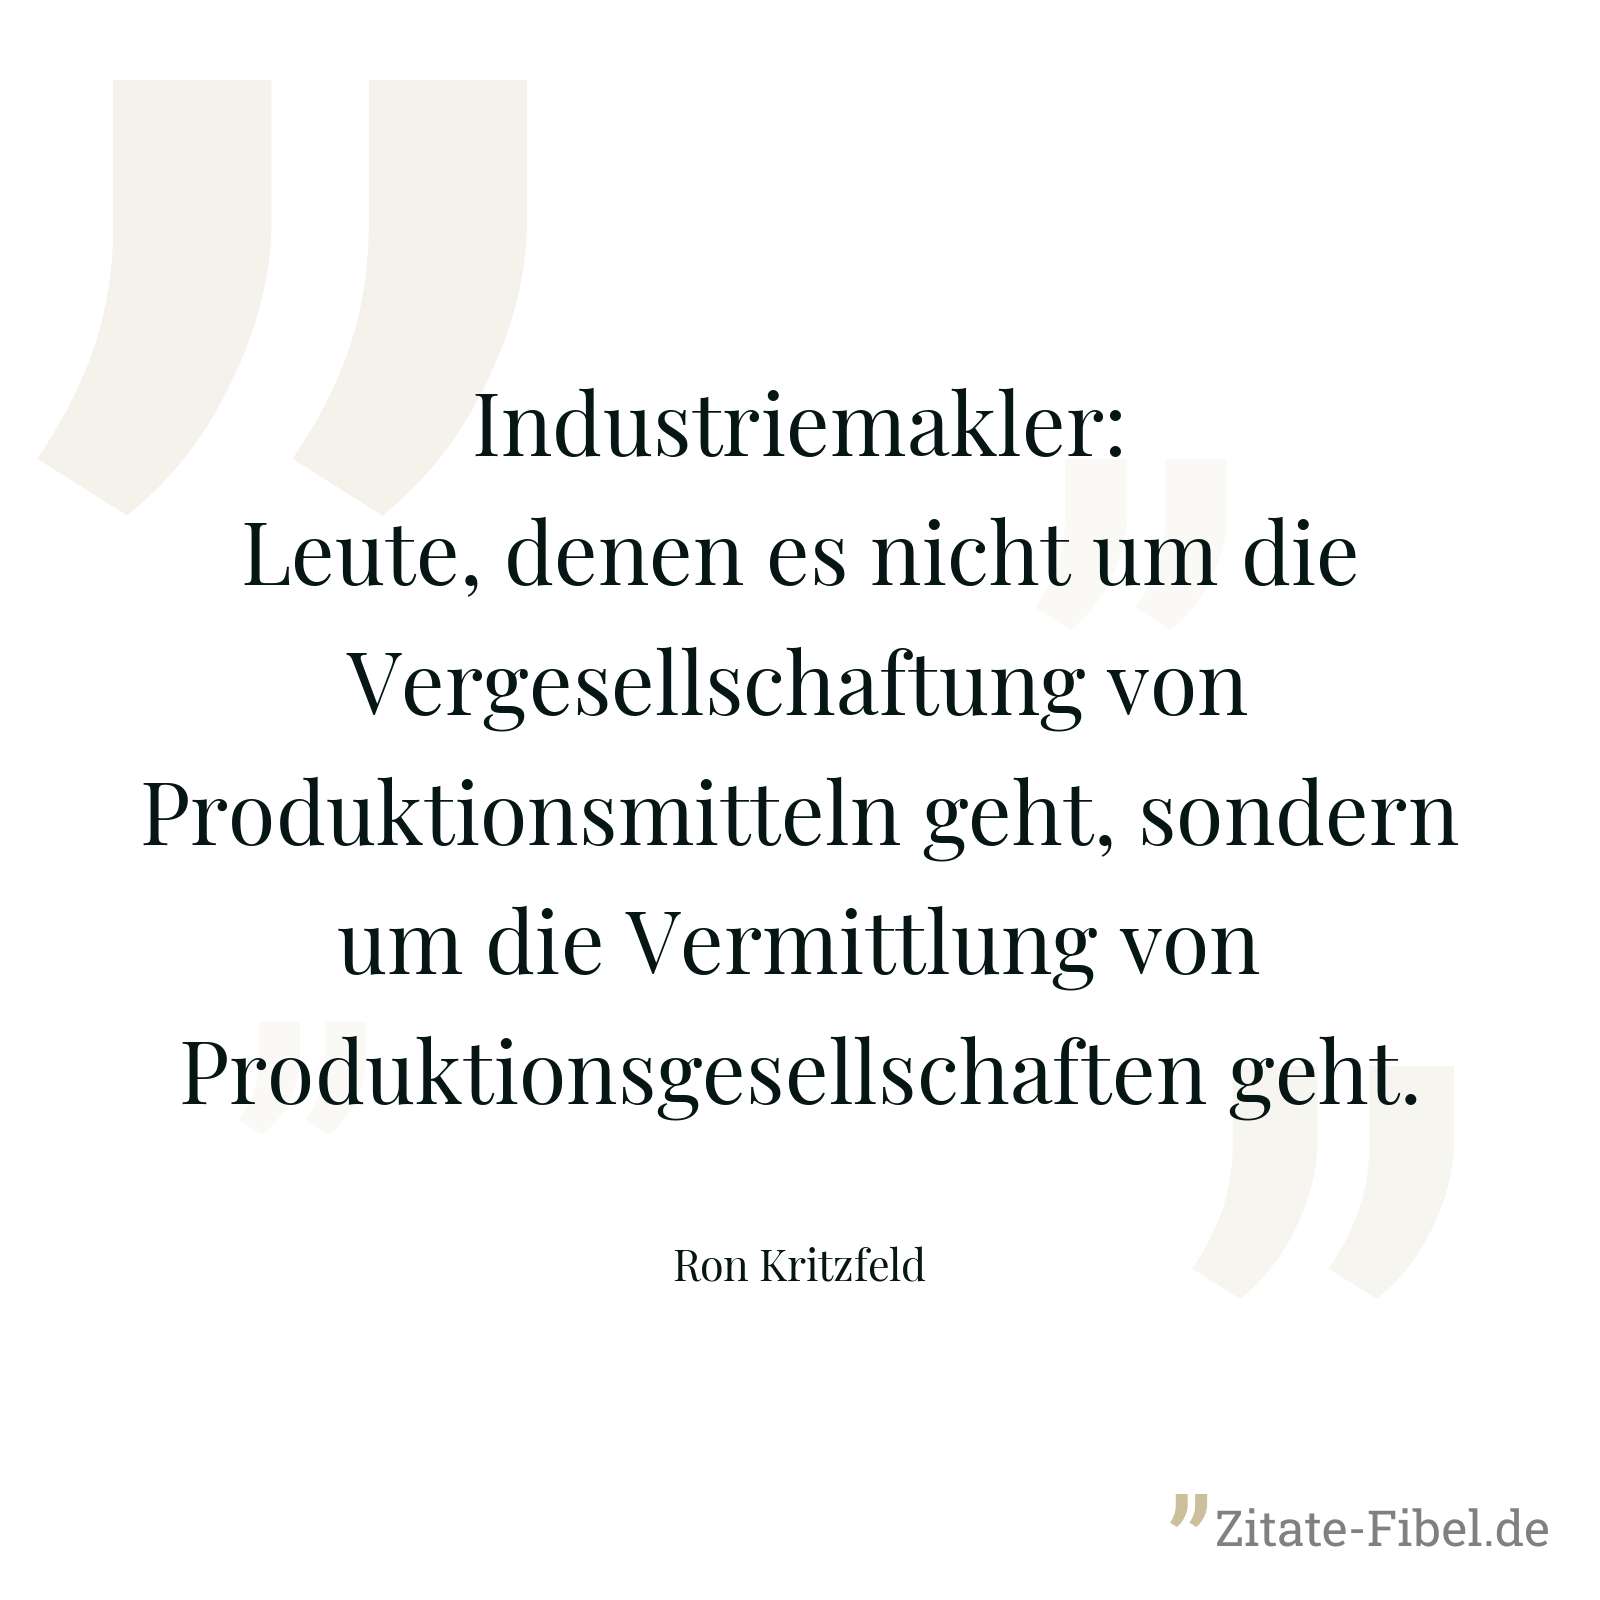 Industriemakler: Leute, denen es nicht um die Vergesellschaftung von Produktionsmitteln geht, sondern um die Vermittlung von Produktionsgesellschaften geht. - Ron Kritzfeld